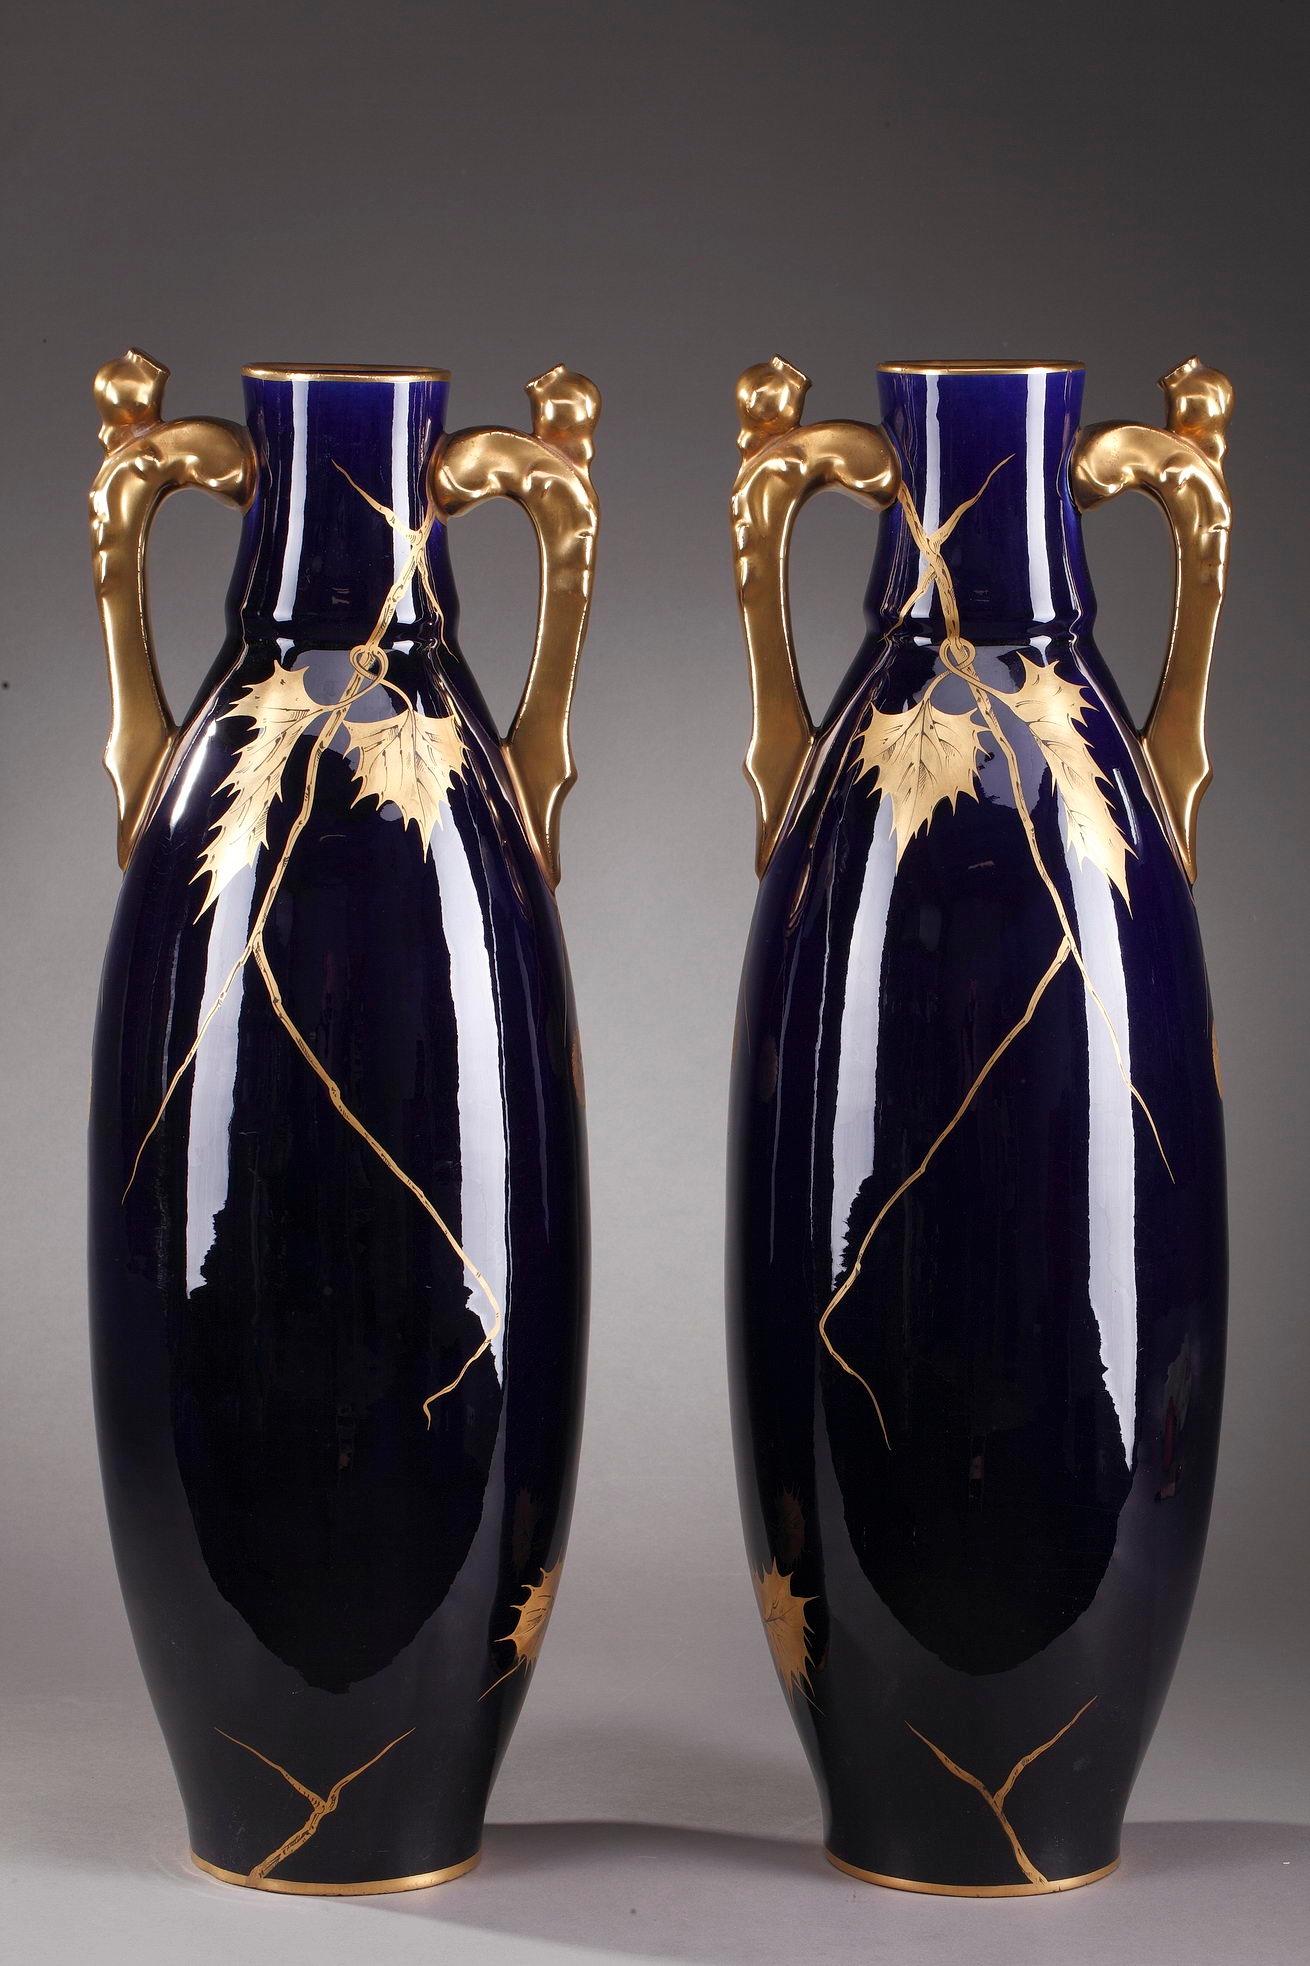 Grands vases en porcelaine fabriqués par Gustave Asch à la fin du XIXe siècle. Chaque vase est mis en valeur par des feuilles de châtaignier en cascade et des marrons dans leurs bogues peints en or sur fond bleu foncé appelé Bleu de Tours. Les